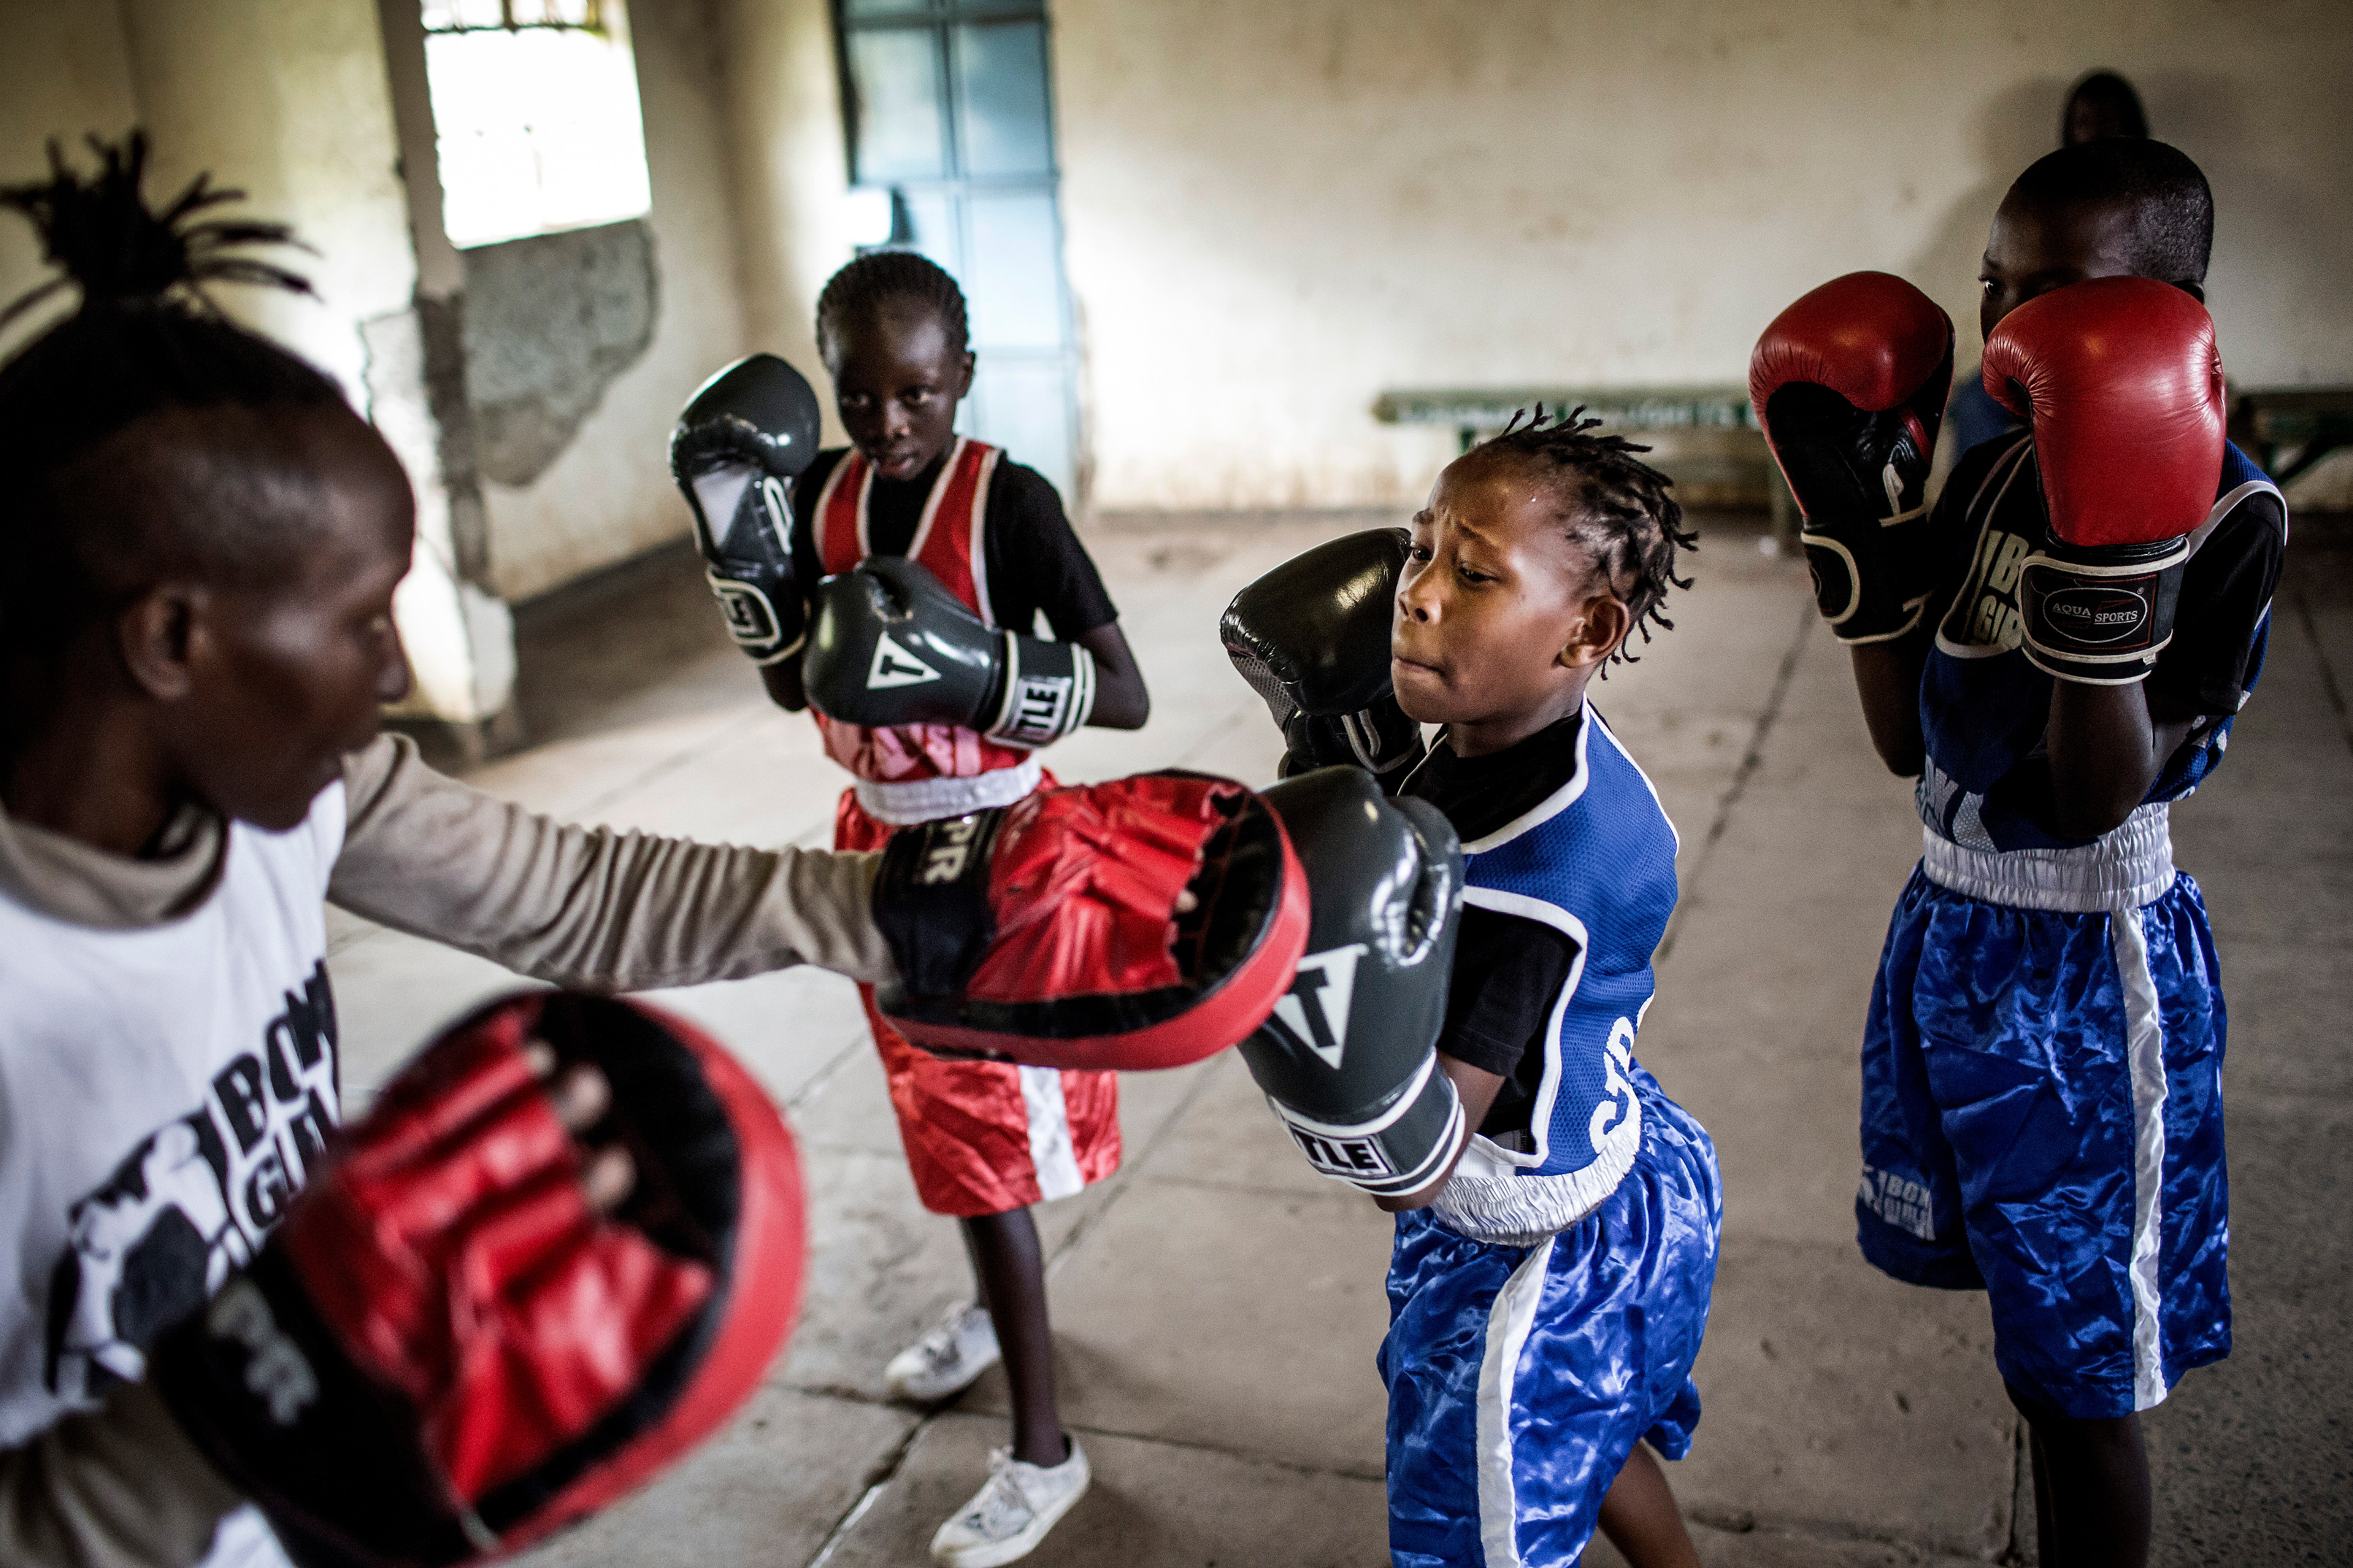 Школа бокса для девочек в Кении. Третье место в категории «Спорт, серии». Луис Тато, Испания